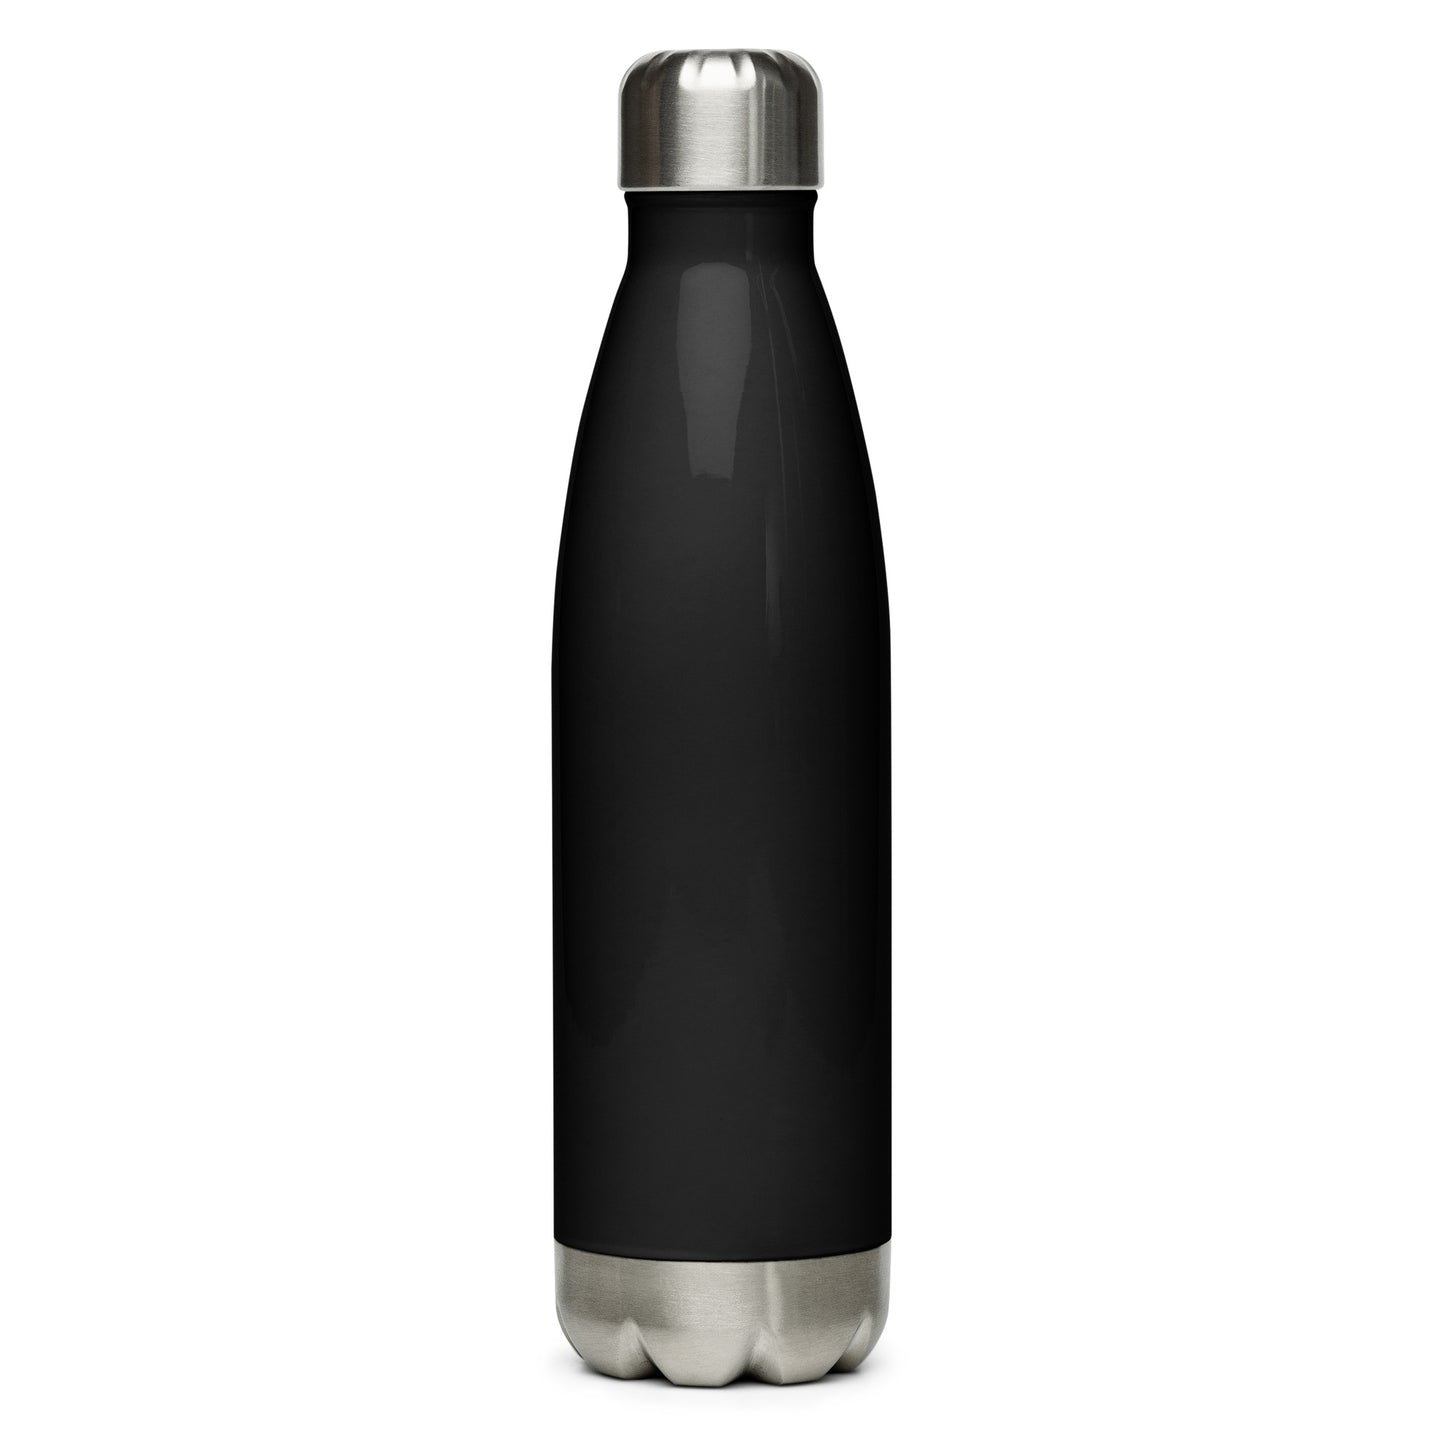 Sri Yantra Stainless steel water bottle